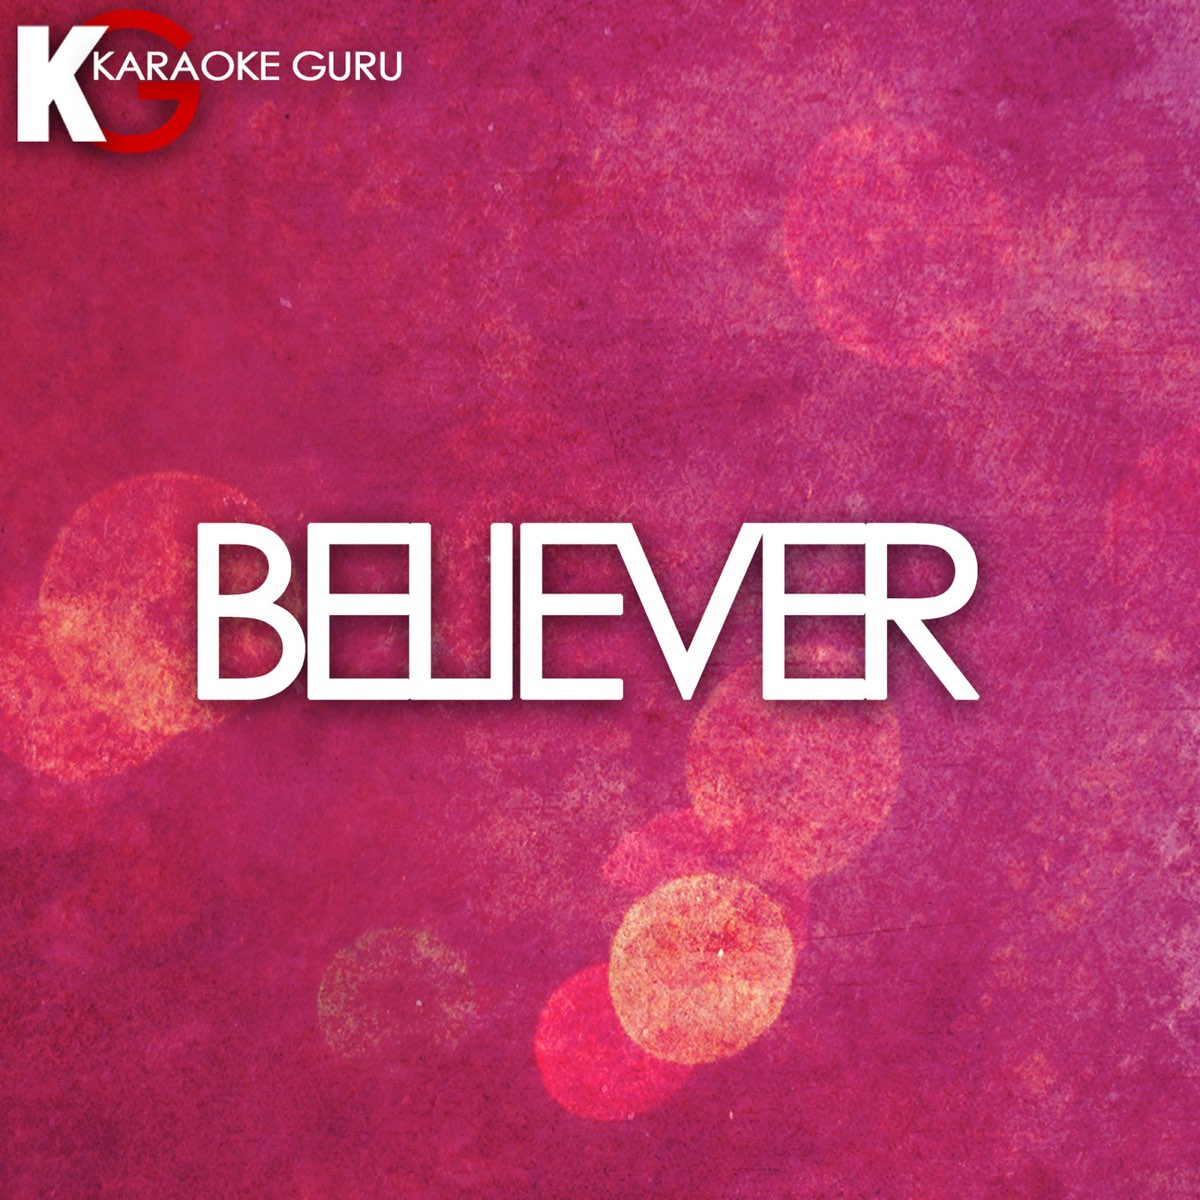 Believer (Karaoke) - Single by Chart Topping Karaoke on Apple Music.